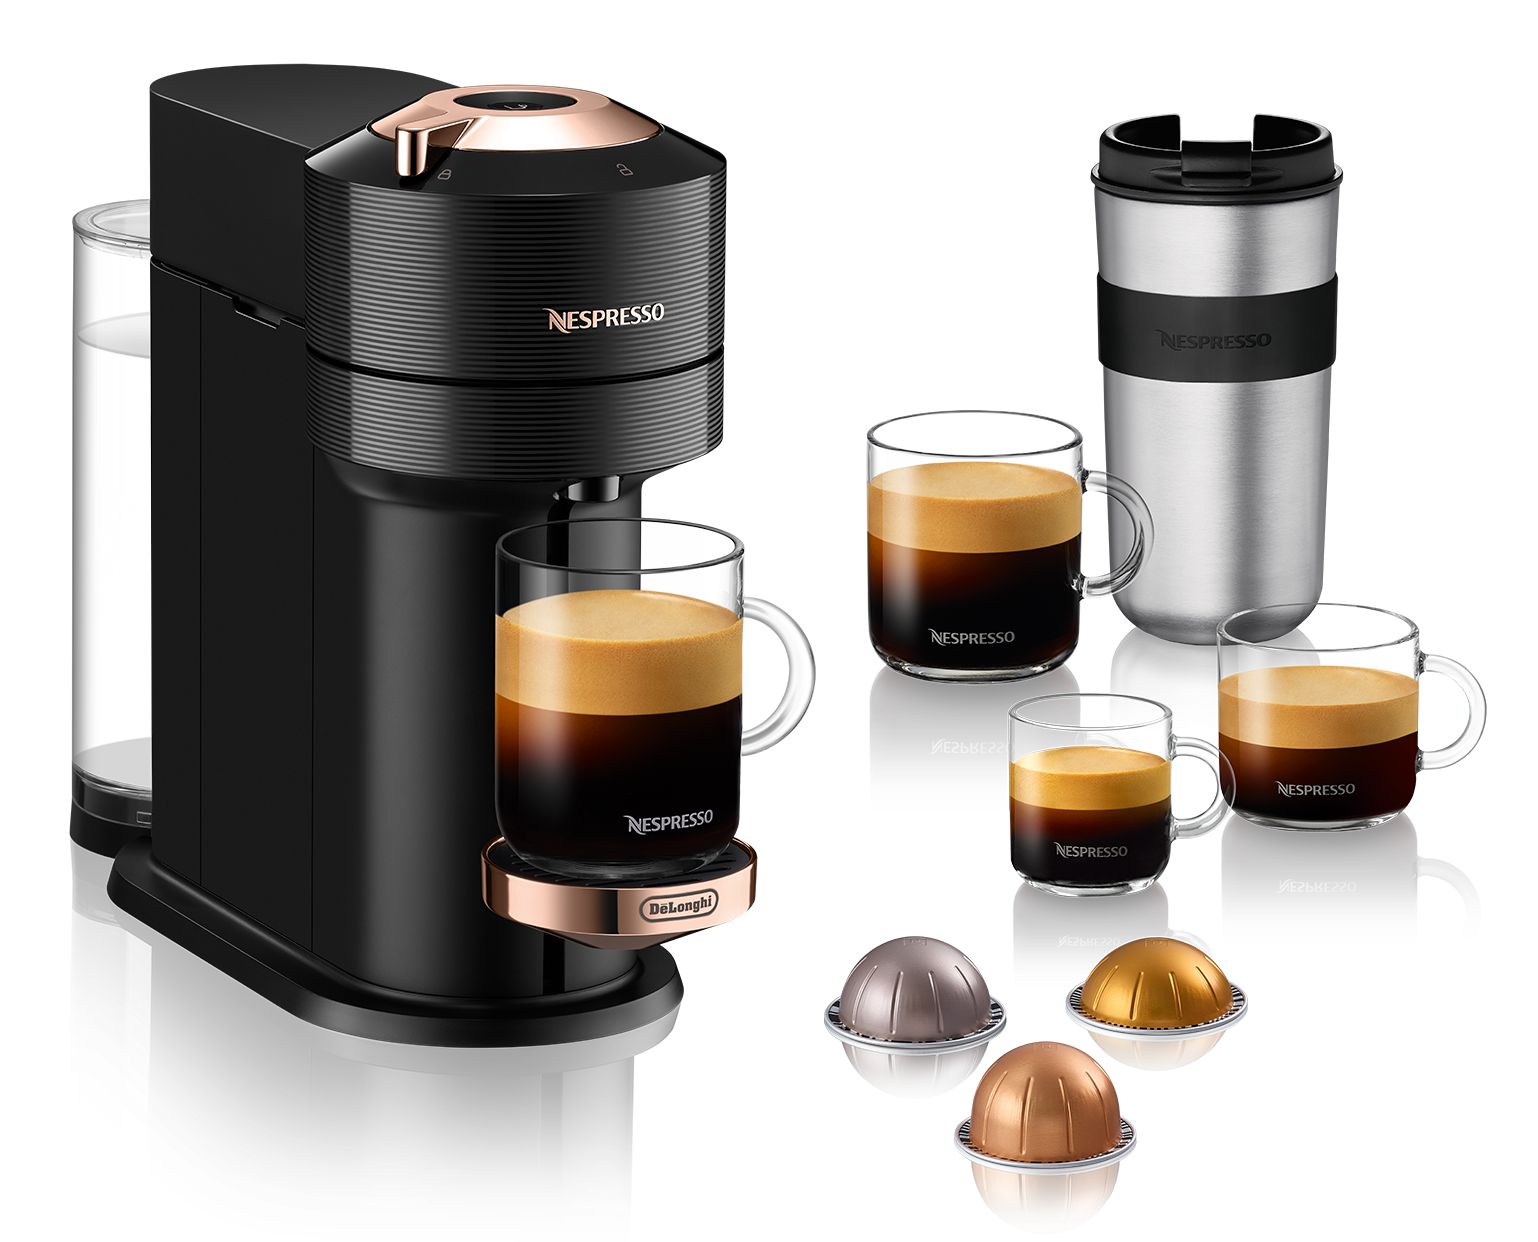 Nespresso Vertuo Next Premium Espresso Machine by DeLonghi with Aerocc – Whole Love